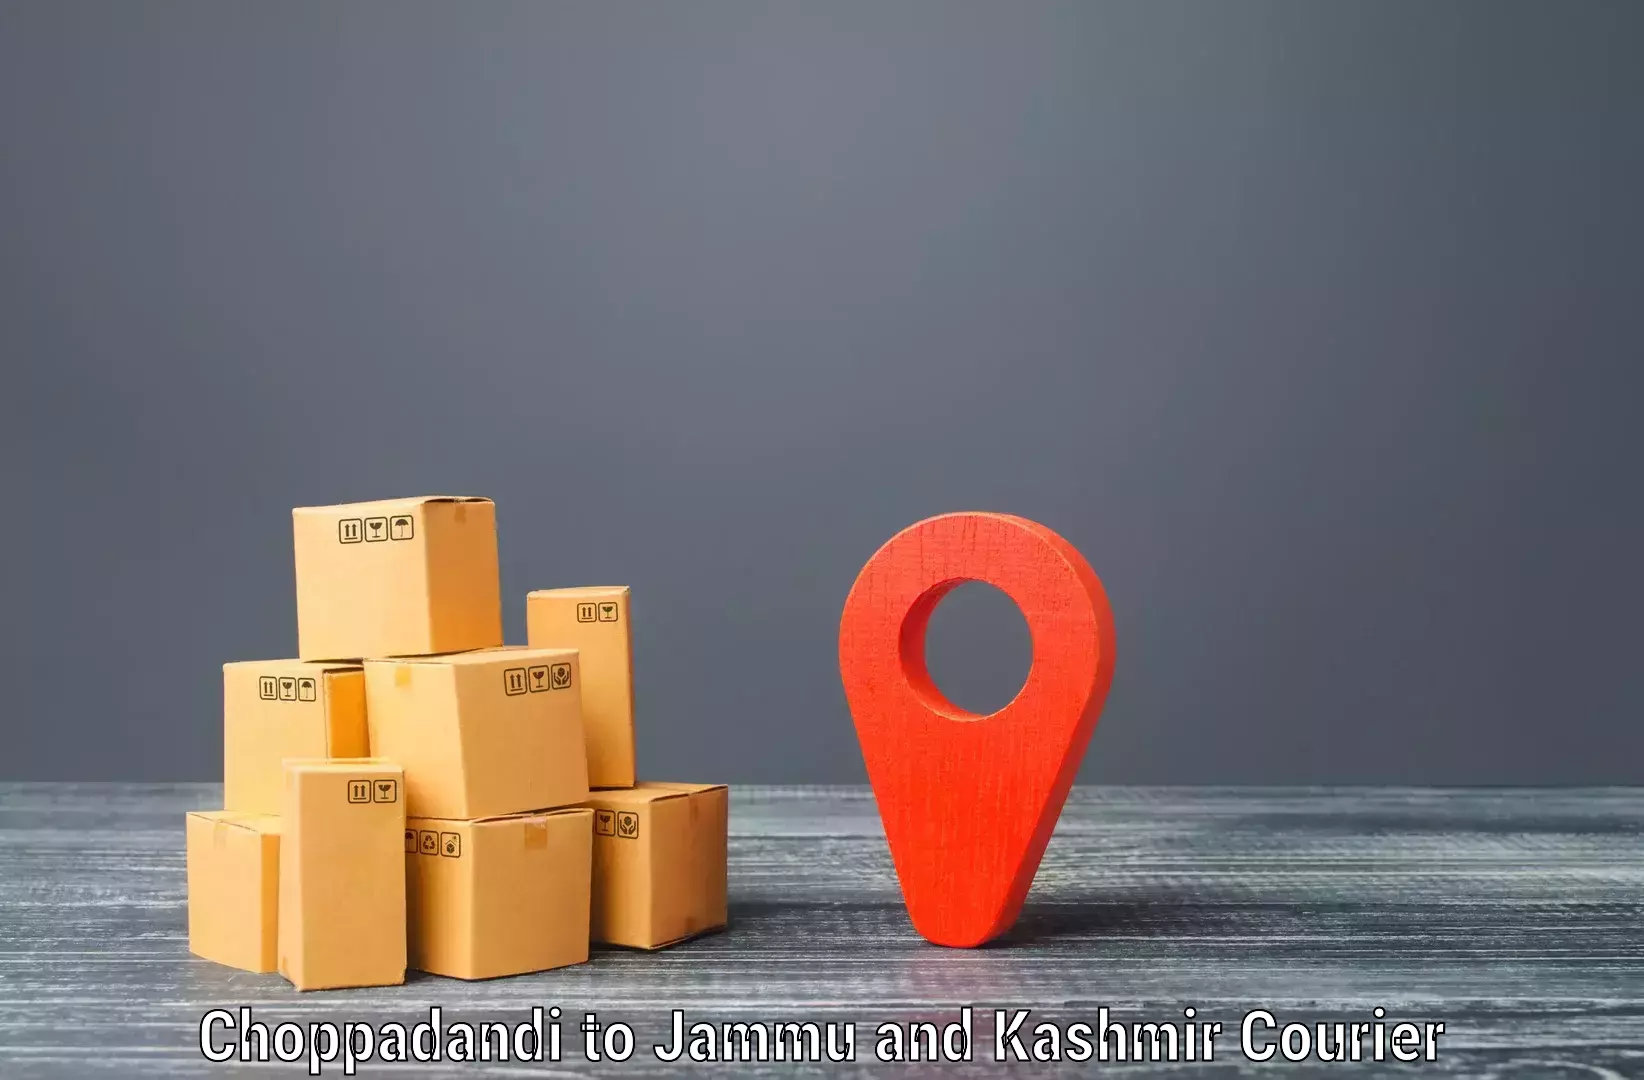 Nationwide shipping services Choppadandi to Kishtwar